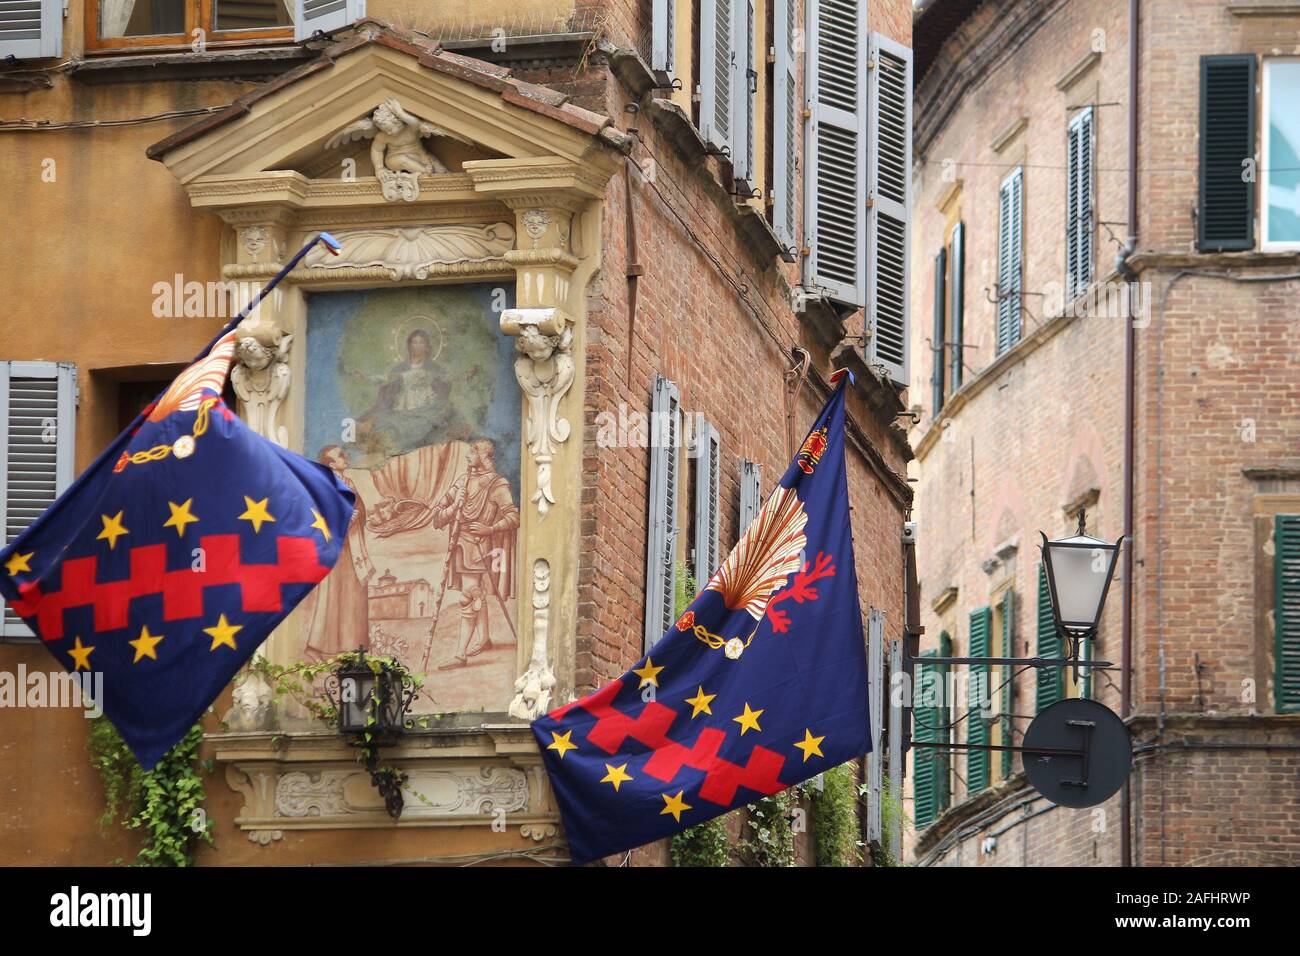 Sienne, Italie. La vieille ville est divisée en quartiers (contrade) traditionnel avec des drapeaux et couleurs. Contrada Nicchio (Coquillage). Banque D'Images